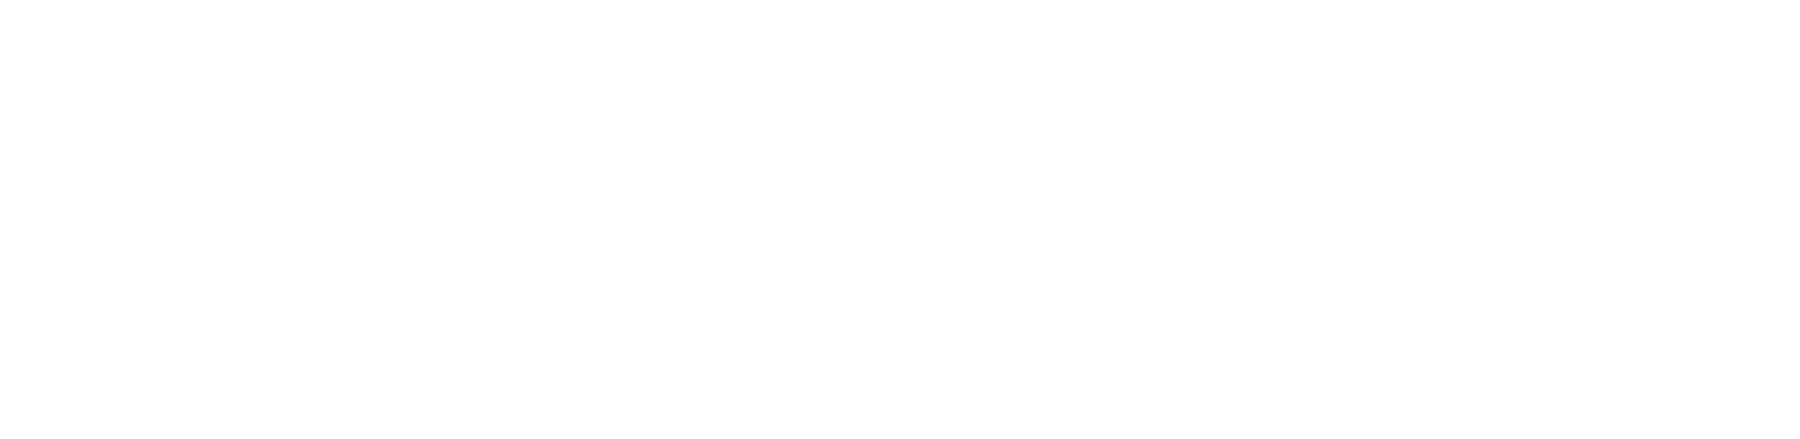 全球標識品牌商品網絡